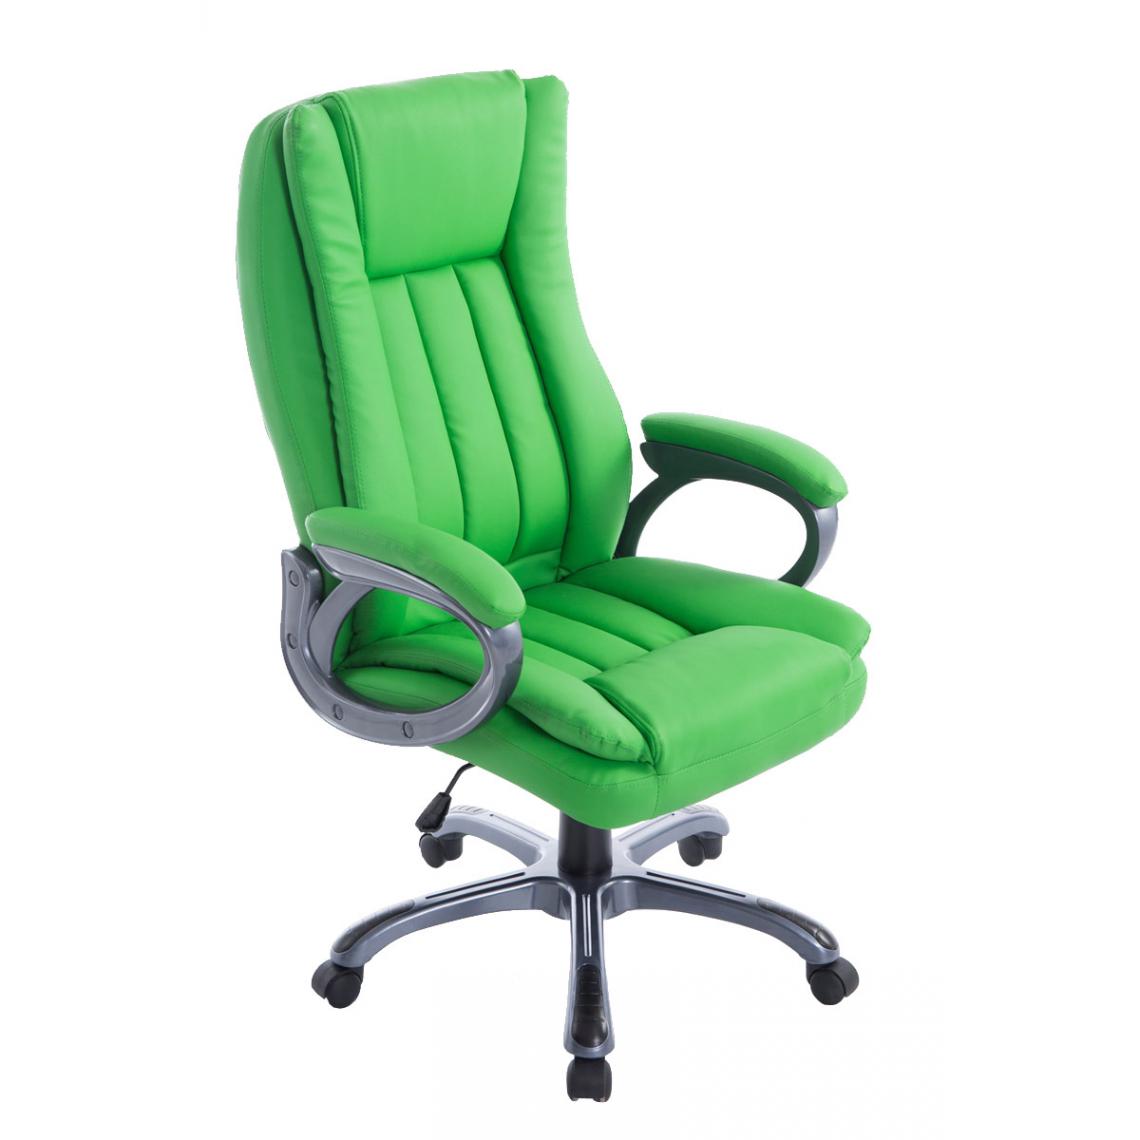 Icaverne - Joli Chaise de bureau Budapest Bern couleur vert - Chaises